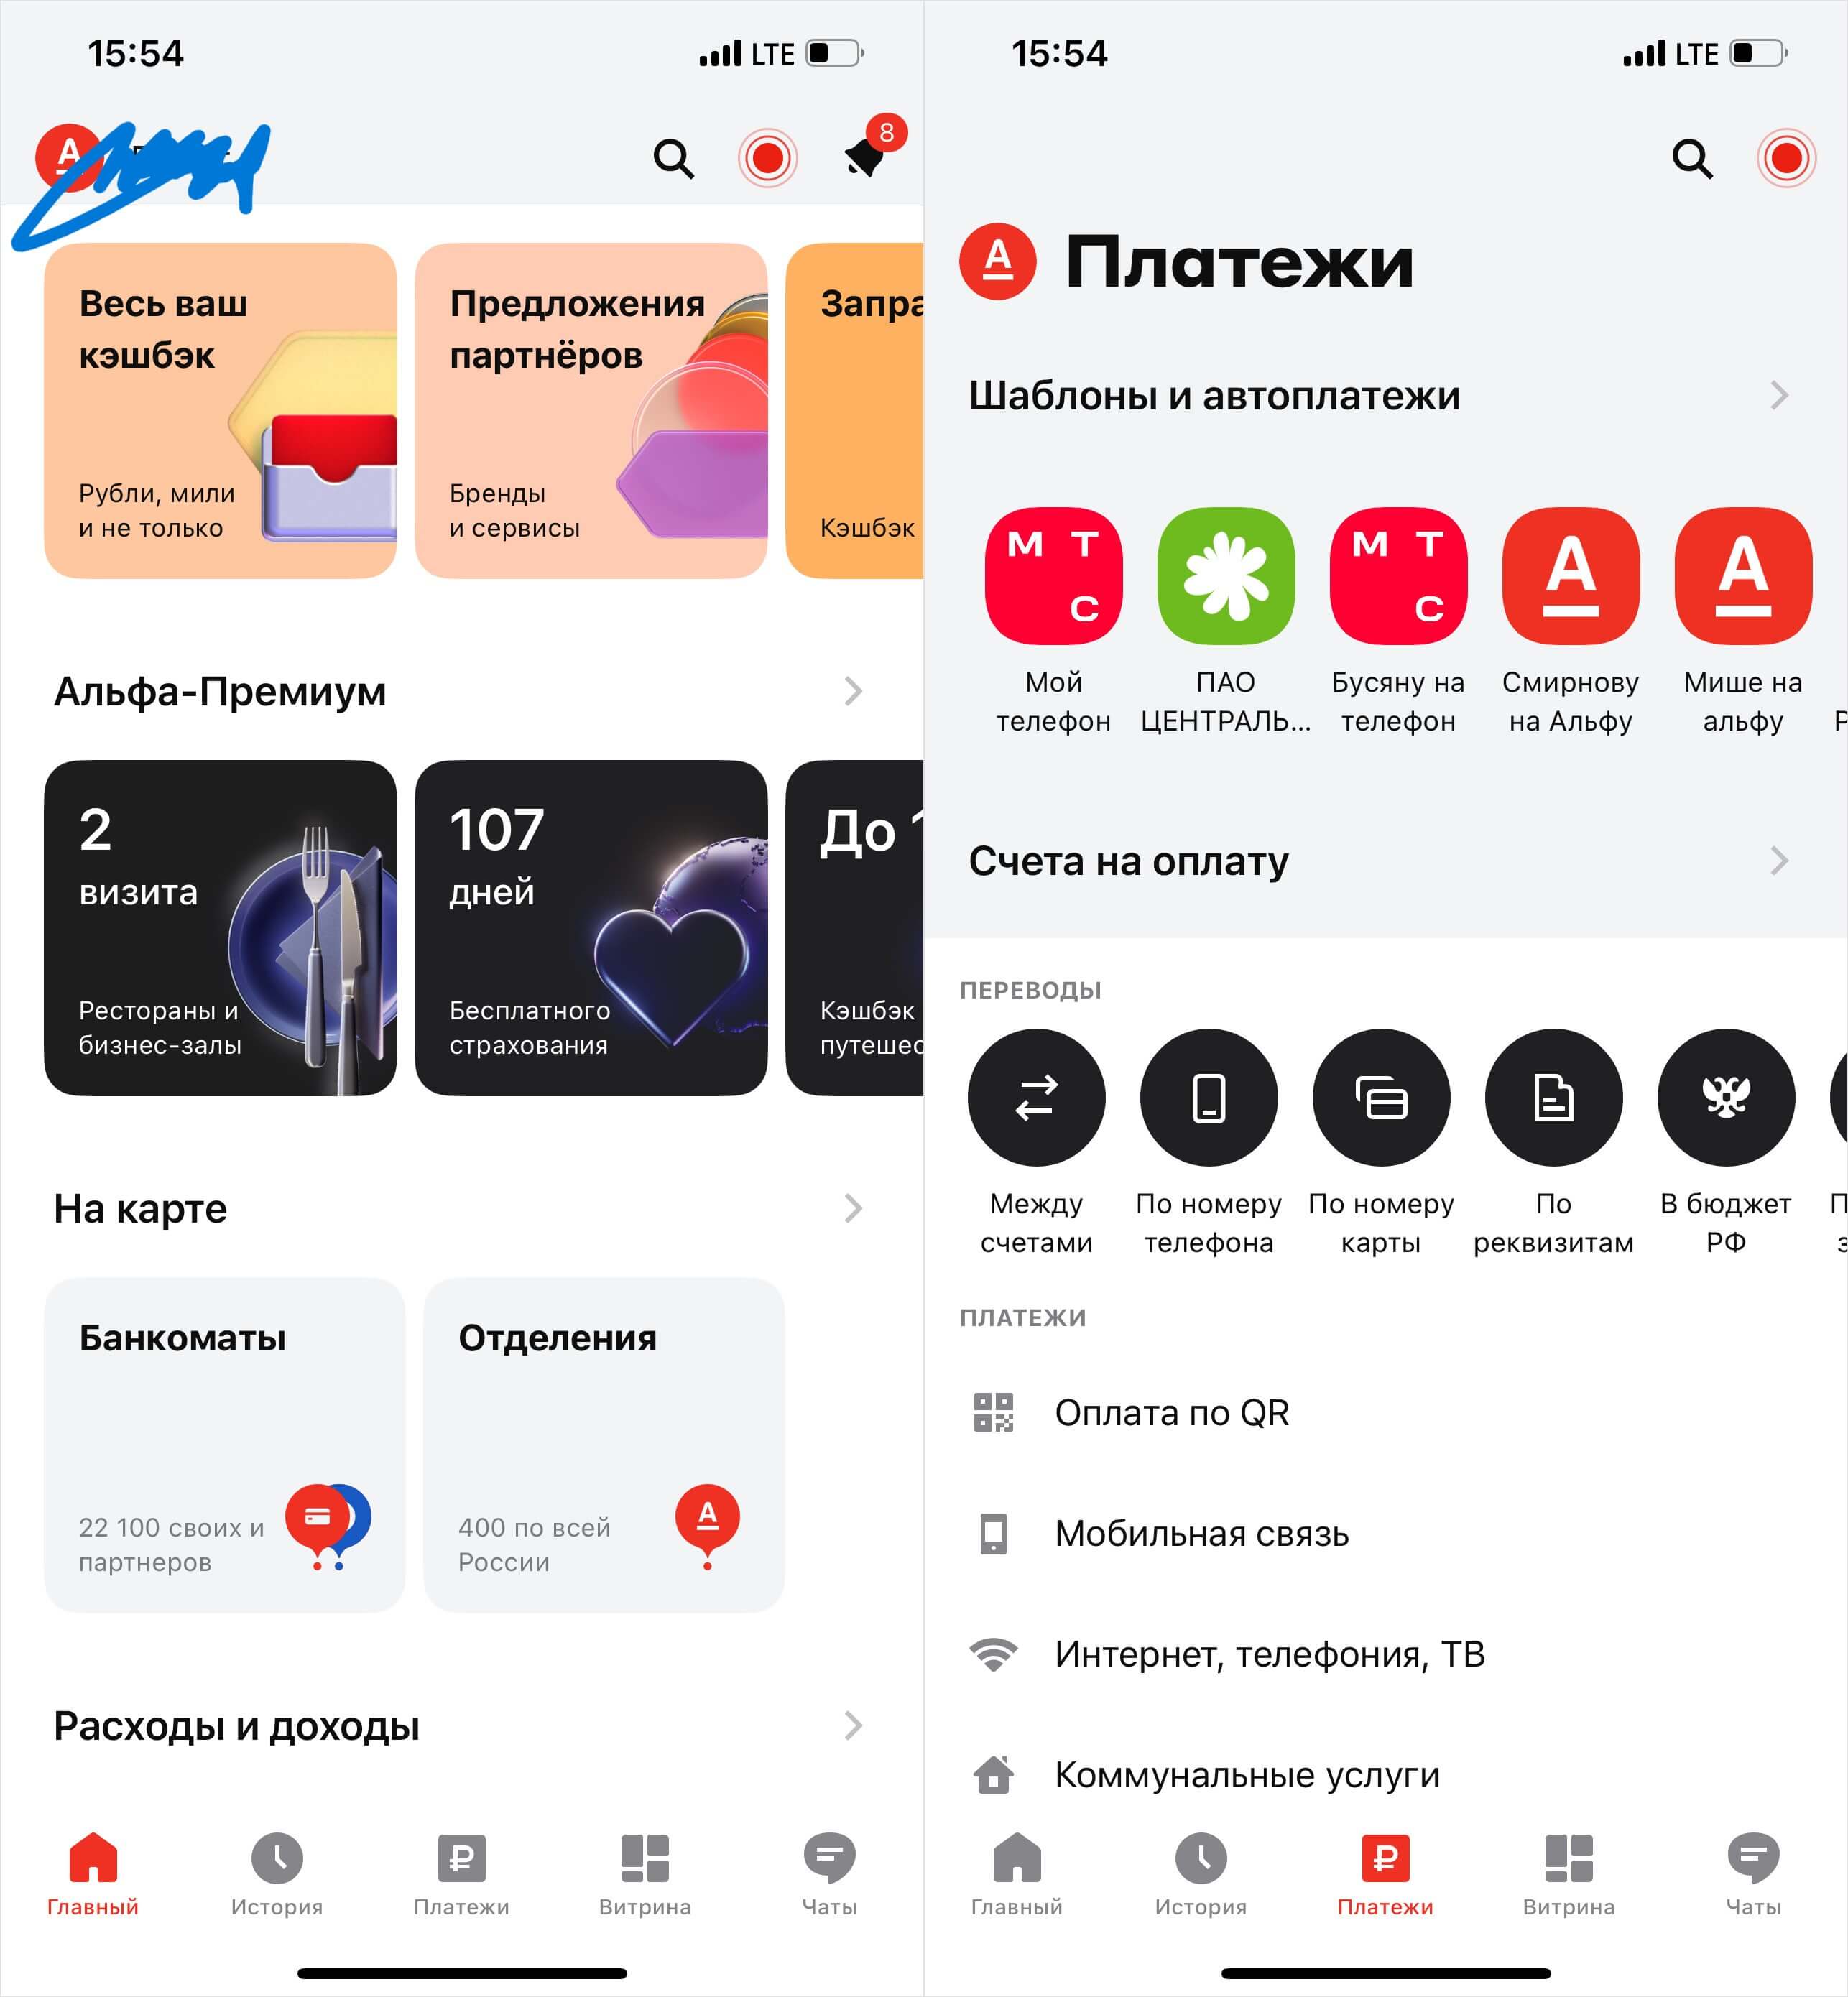 Альфа-банк выпустил новое приложение для Айфона — Деньги есть. А его  удалили из App Store через 9 дней | AppleInsider.ru